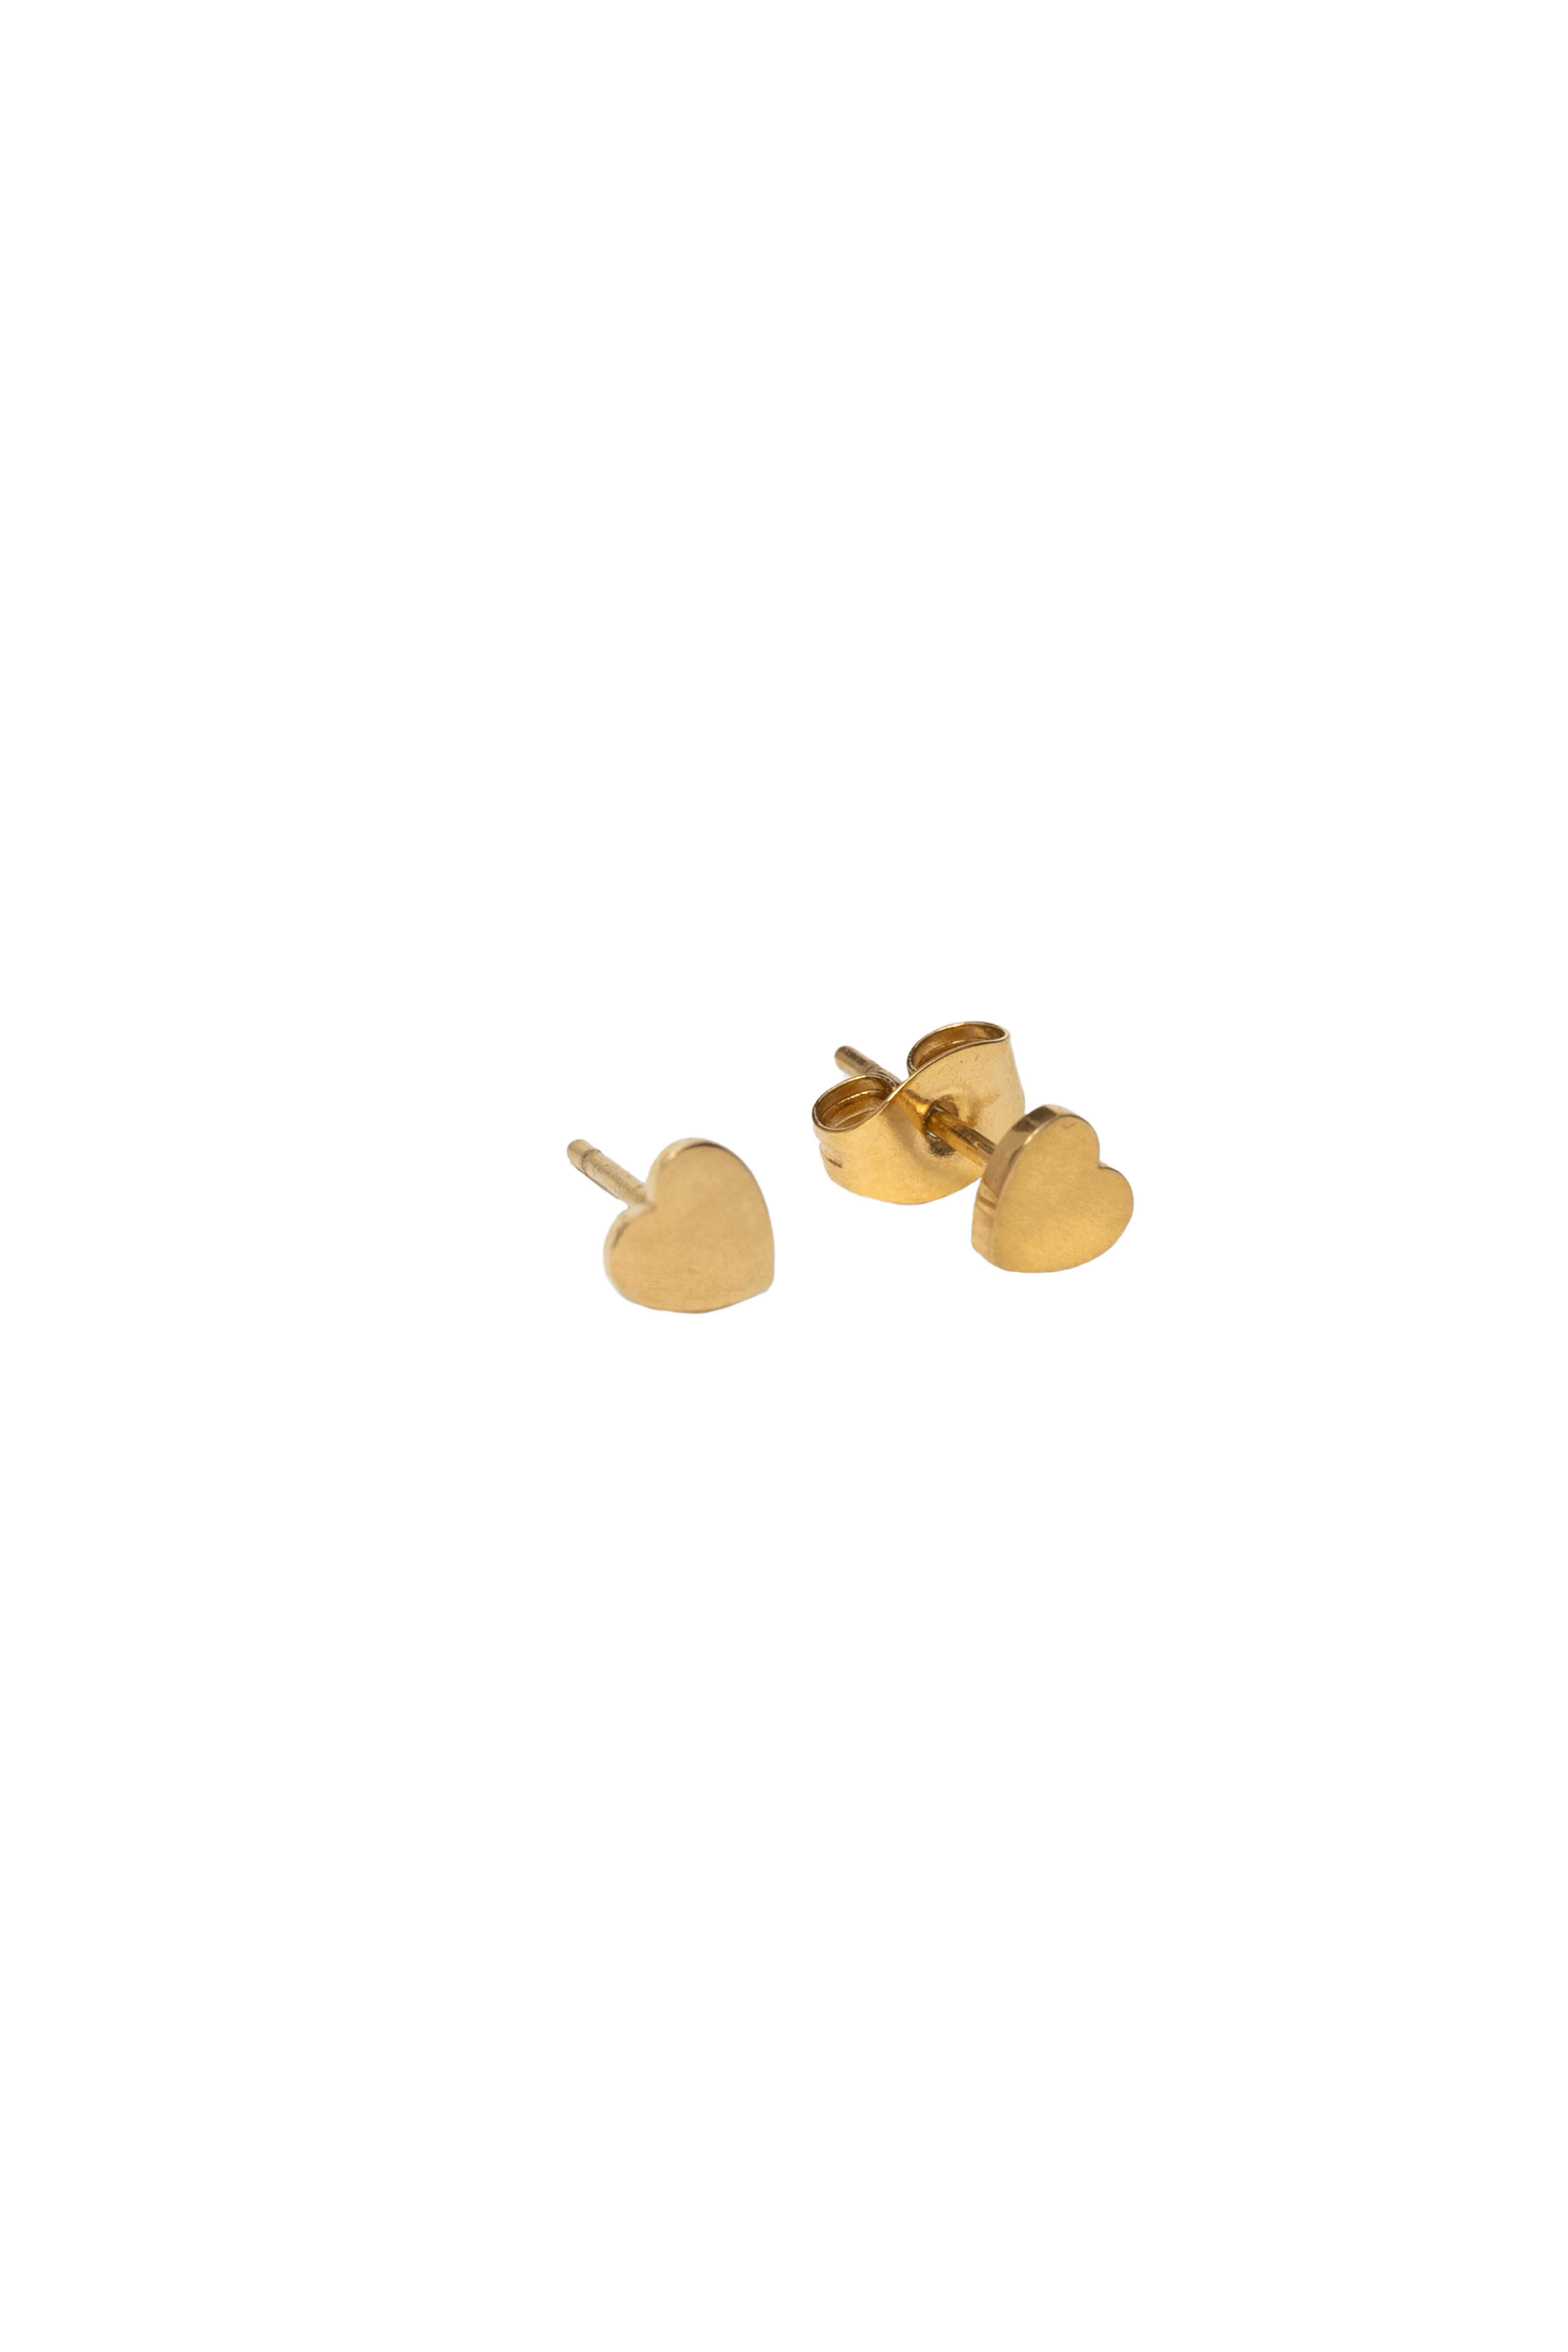 Big Heart Studs (Vorbestellung möglich - Lieferung voraussichtlich Ende Juni) - caliorjewelry